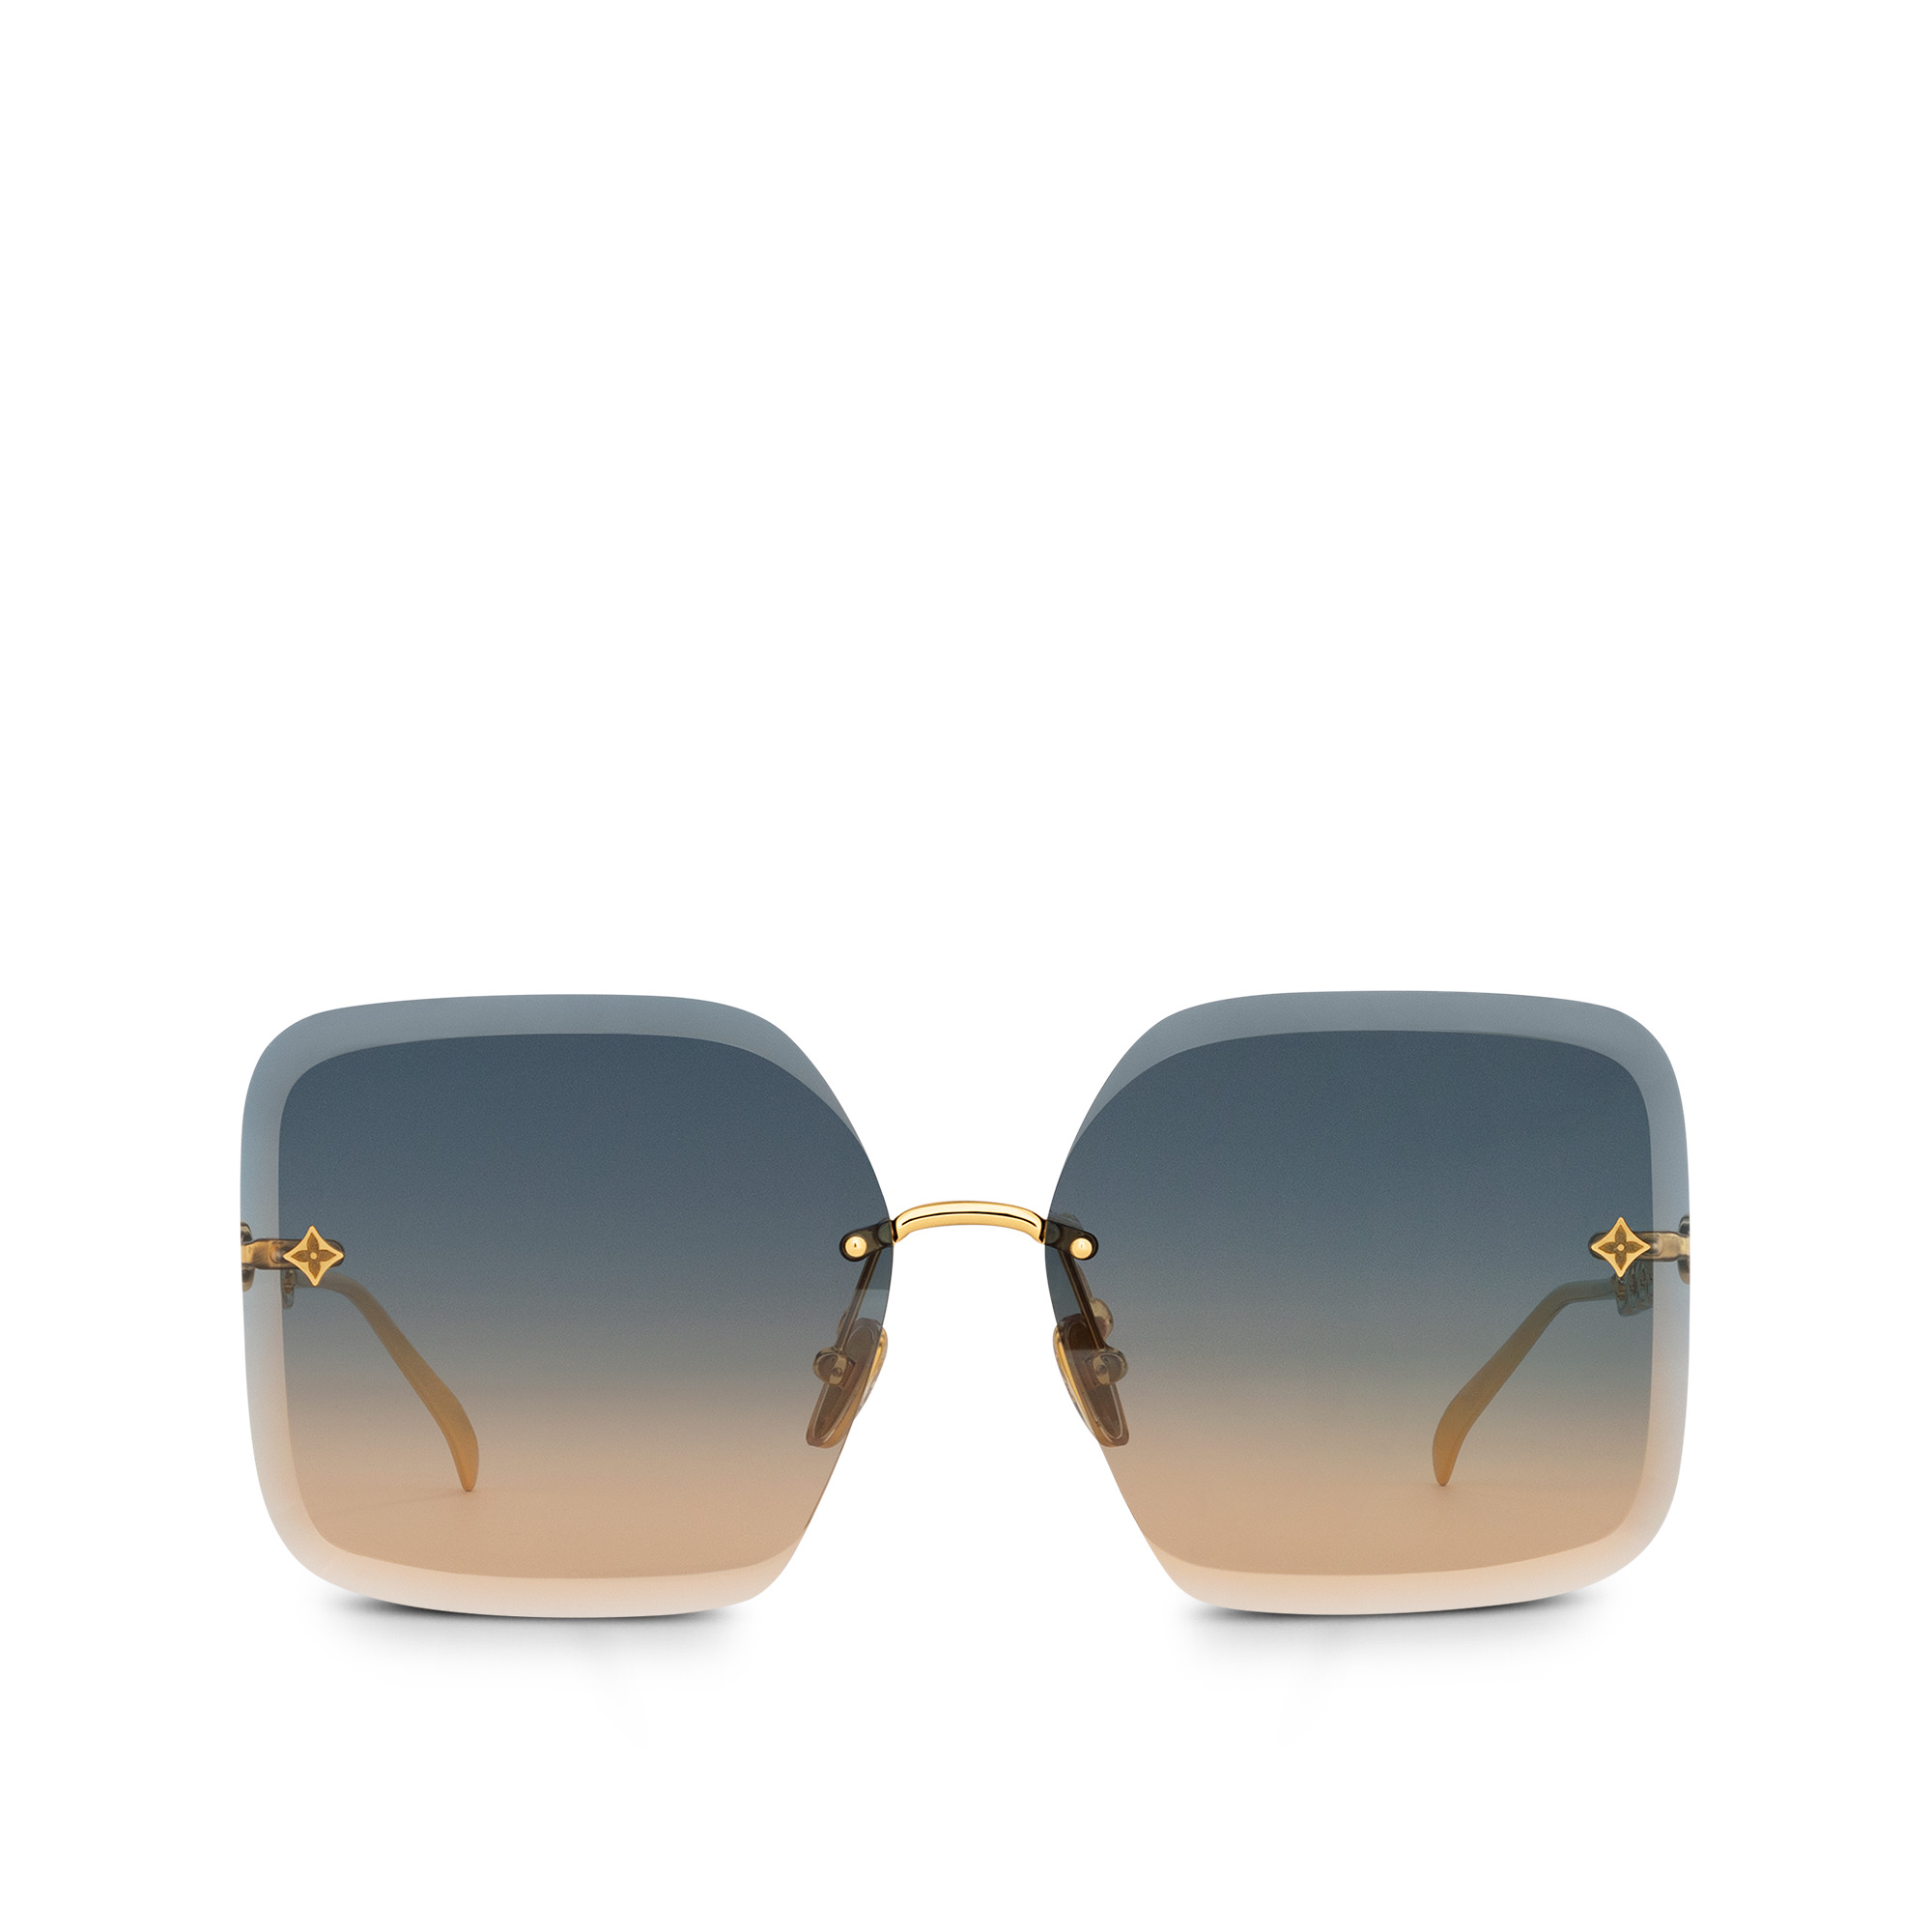 Louis Vuitton LV Star Square Sunglasses Gradient Blue Metal. Size U